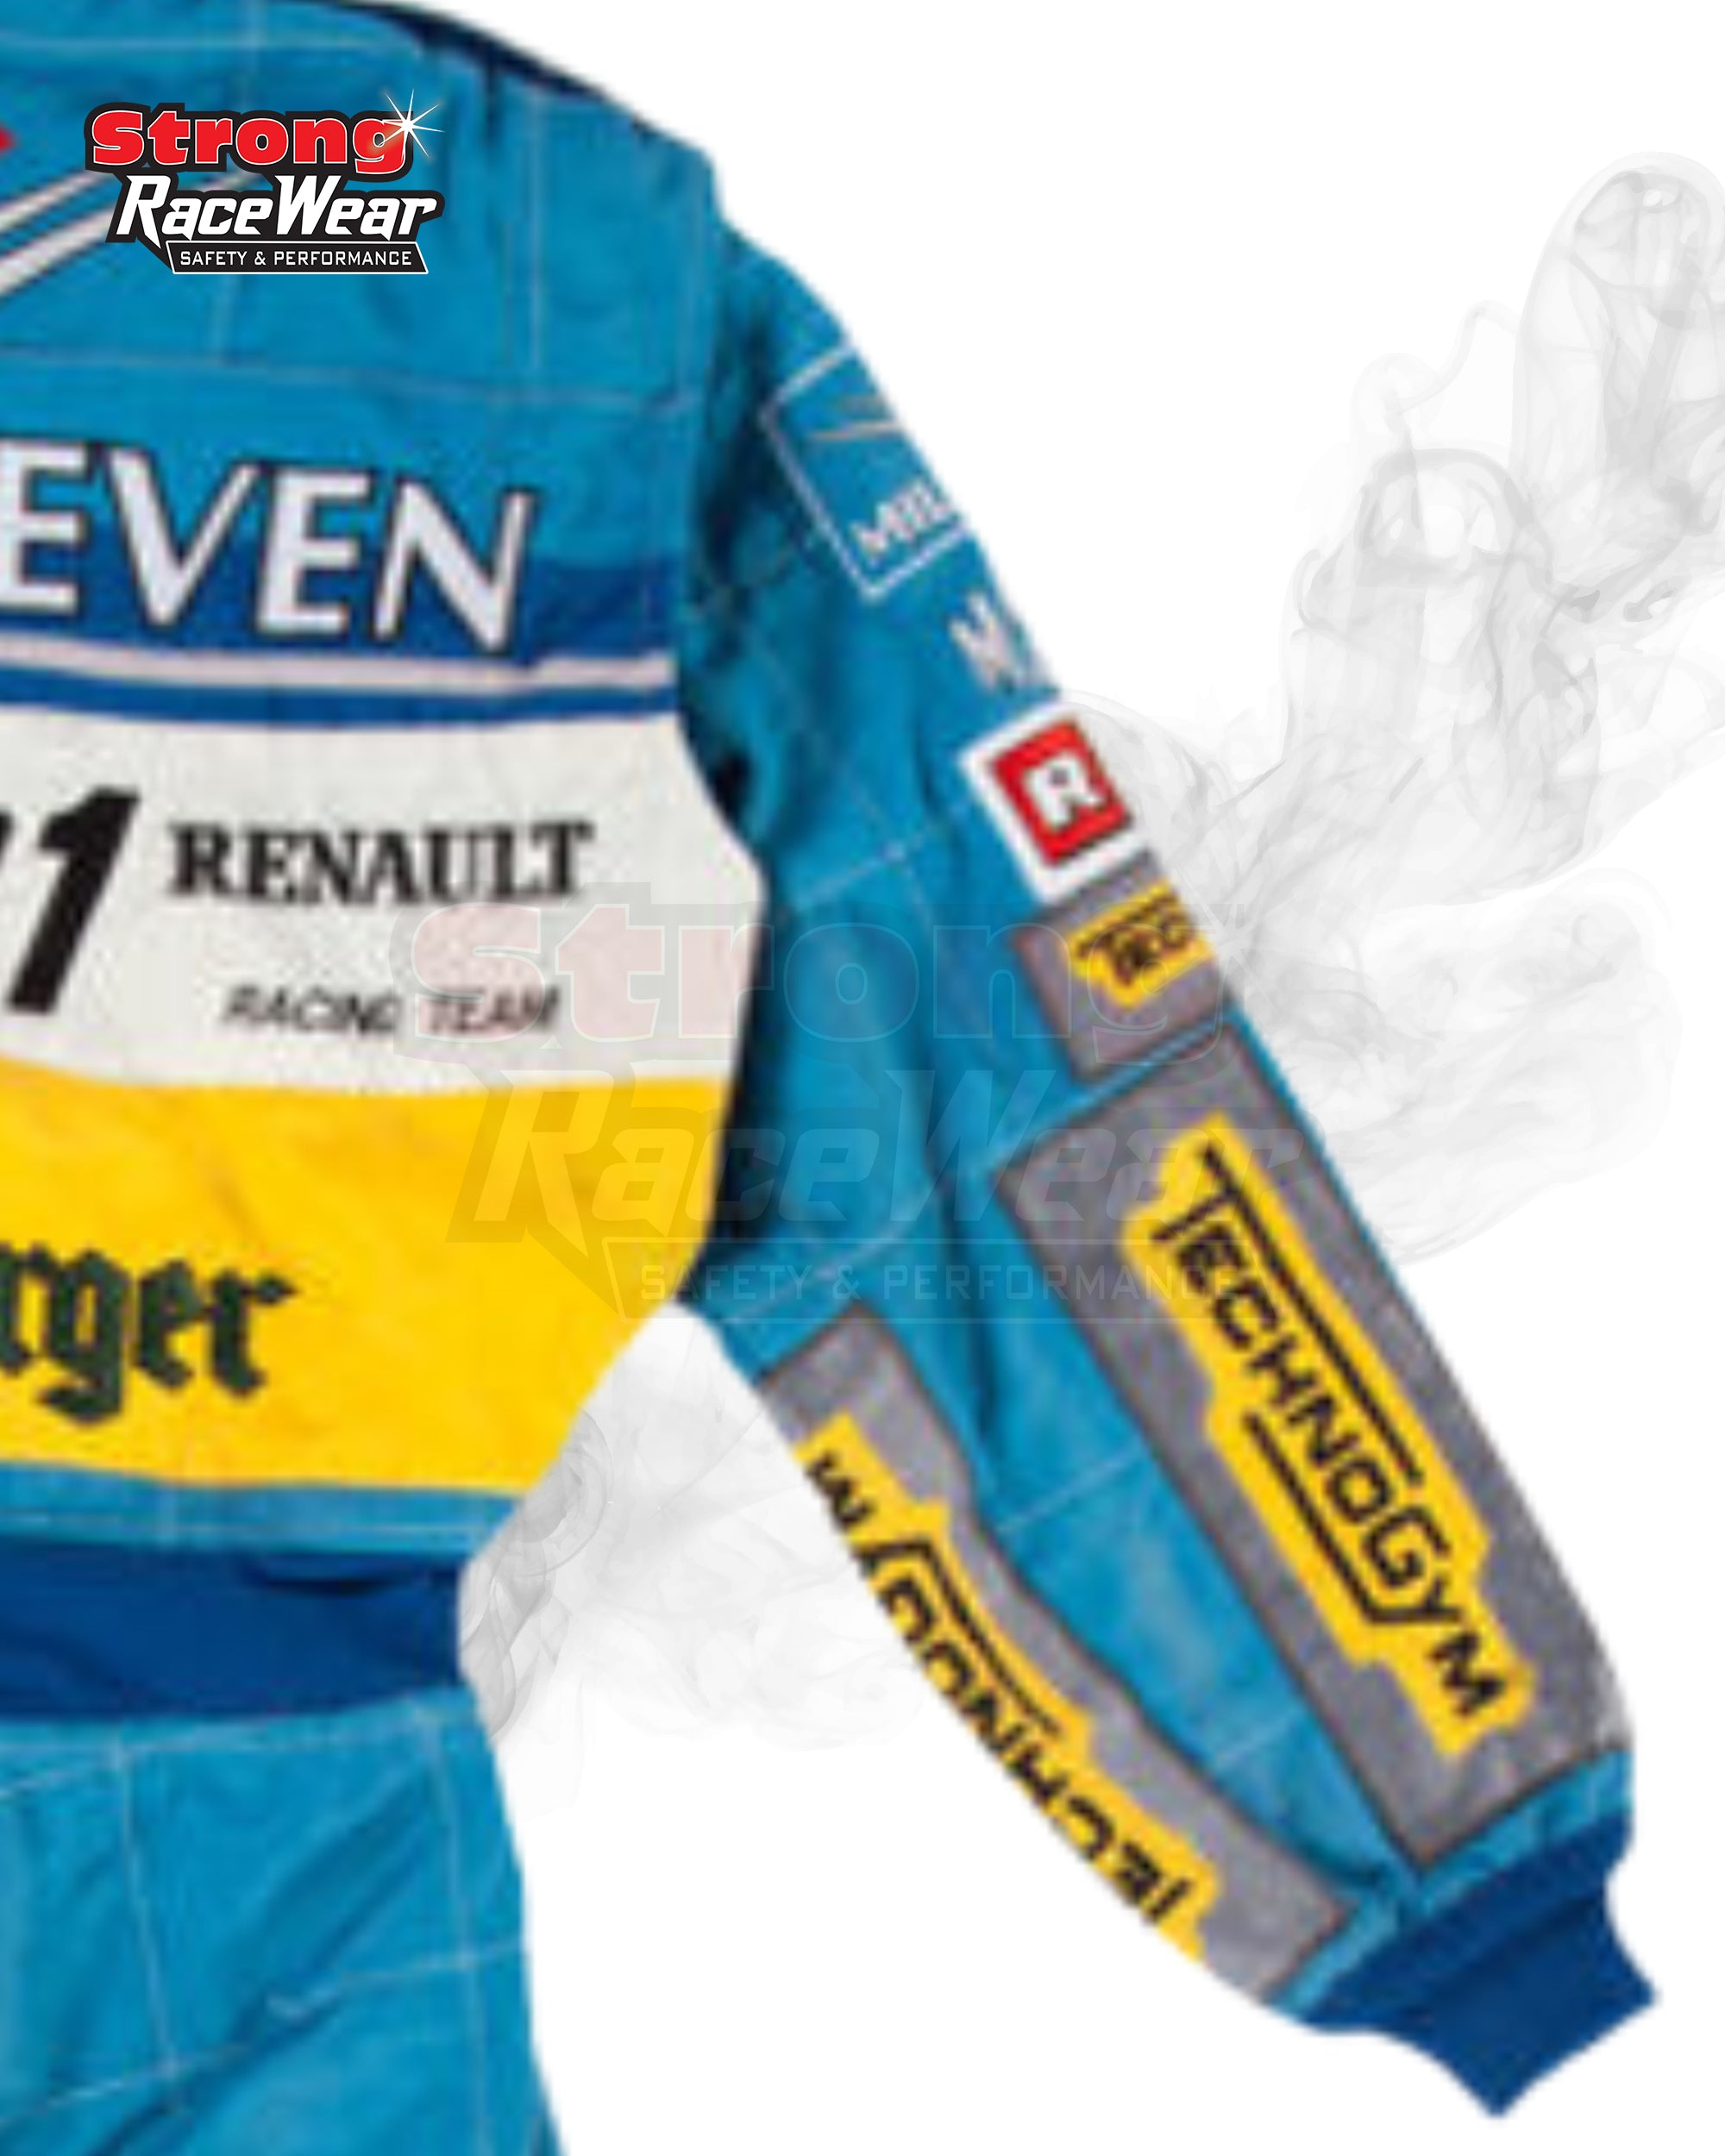 Michael Schumacher BitBurger 1995 F1 Race Suit